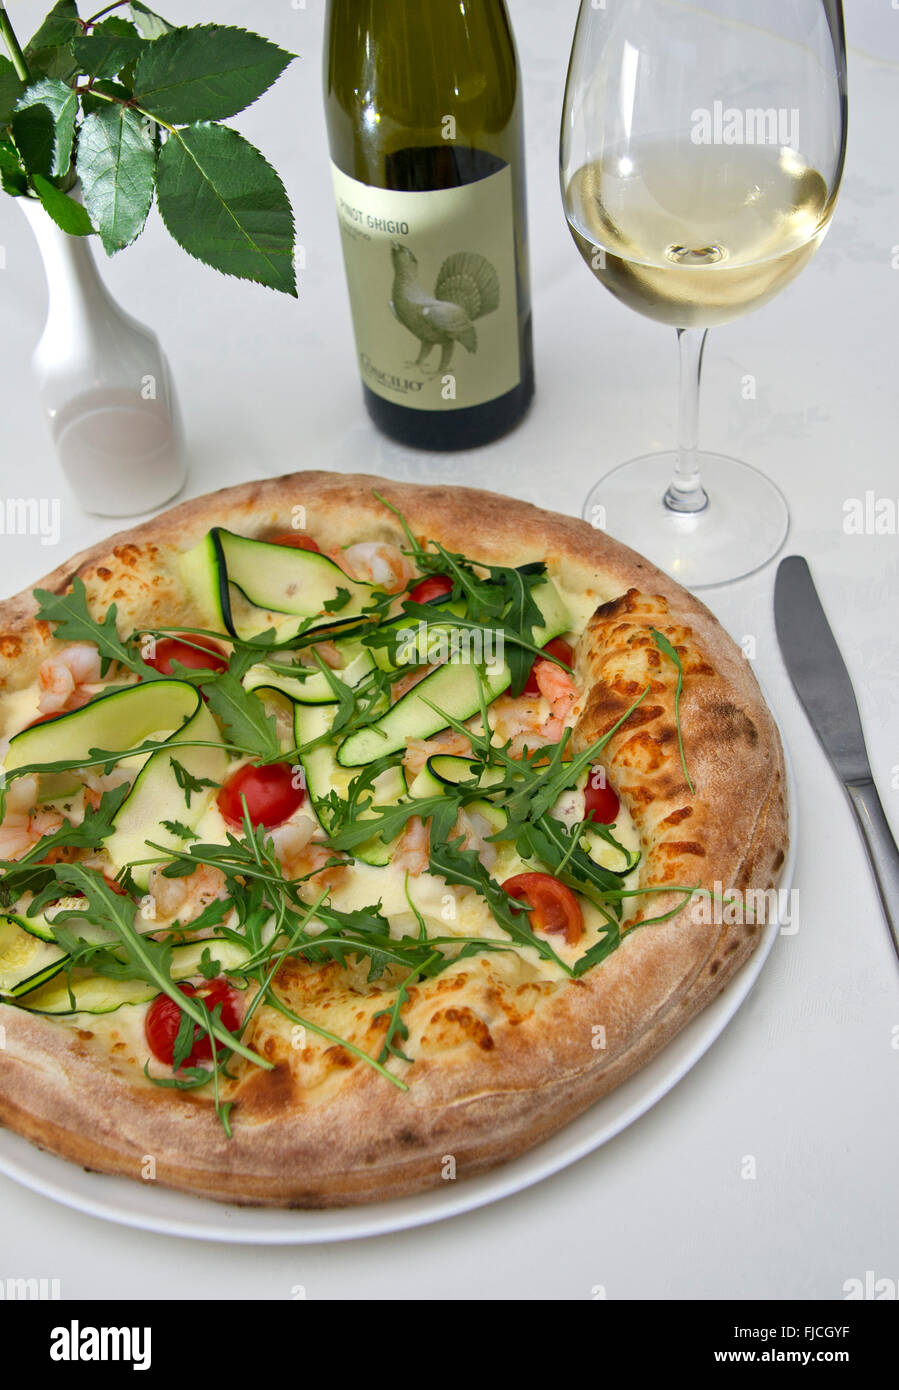 Il Michelangelo restaurant italien à Weston-Super-Mare,UK.une pizza 2 aliments Aliments repas cuisine méditerranéenne plat plaque d'Italie Banque D'Images